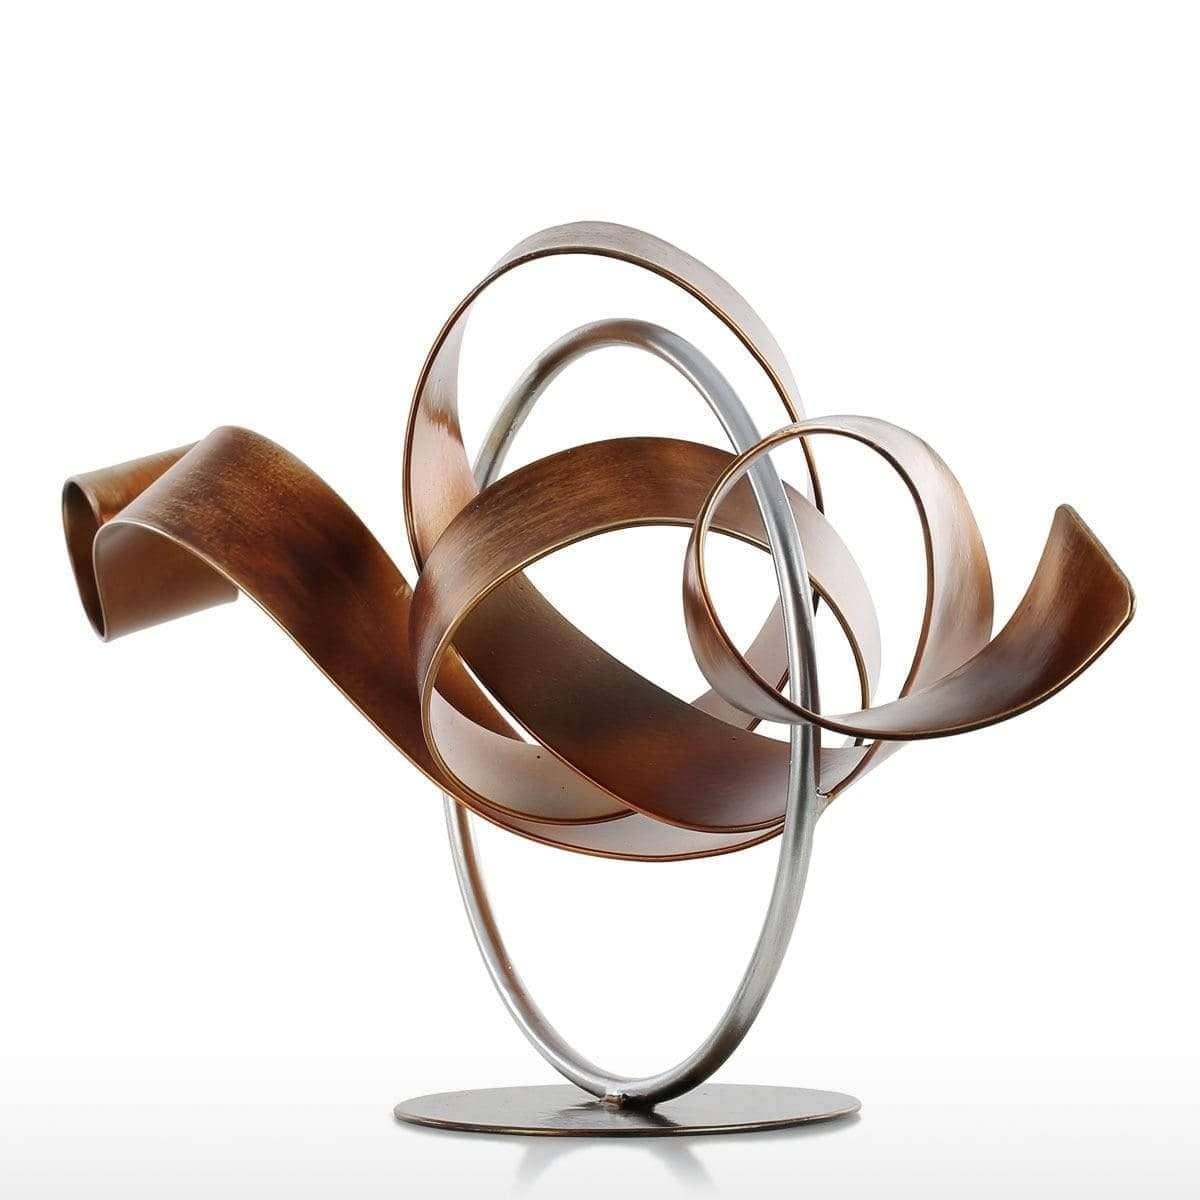 Circle & Ribbon Abstract Statue Modern Home Decor - Contemporary & Unique Design